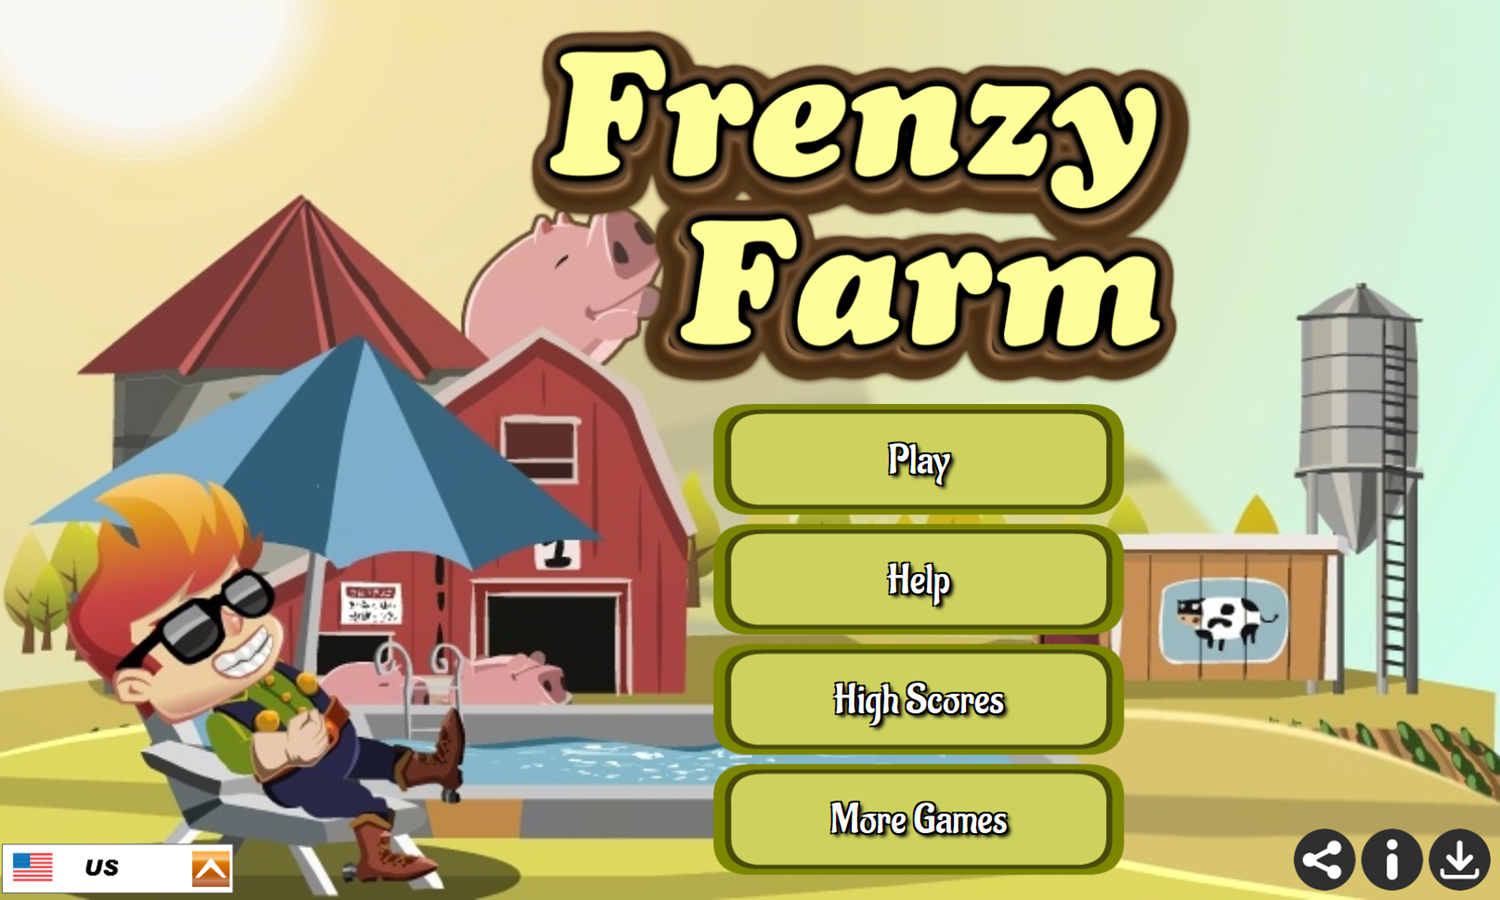 Frenzy Farm Game Welcome Screen Screenshot.